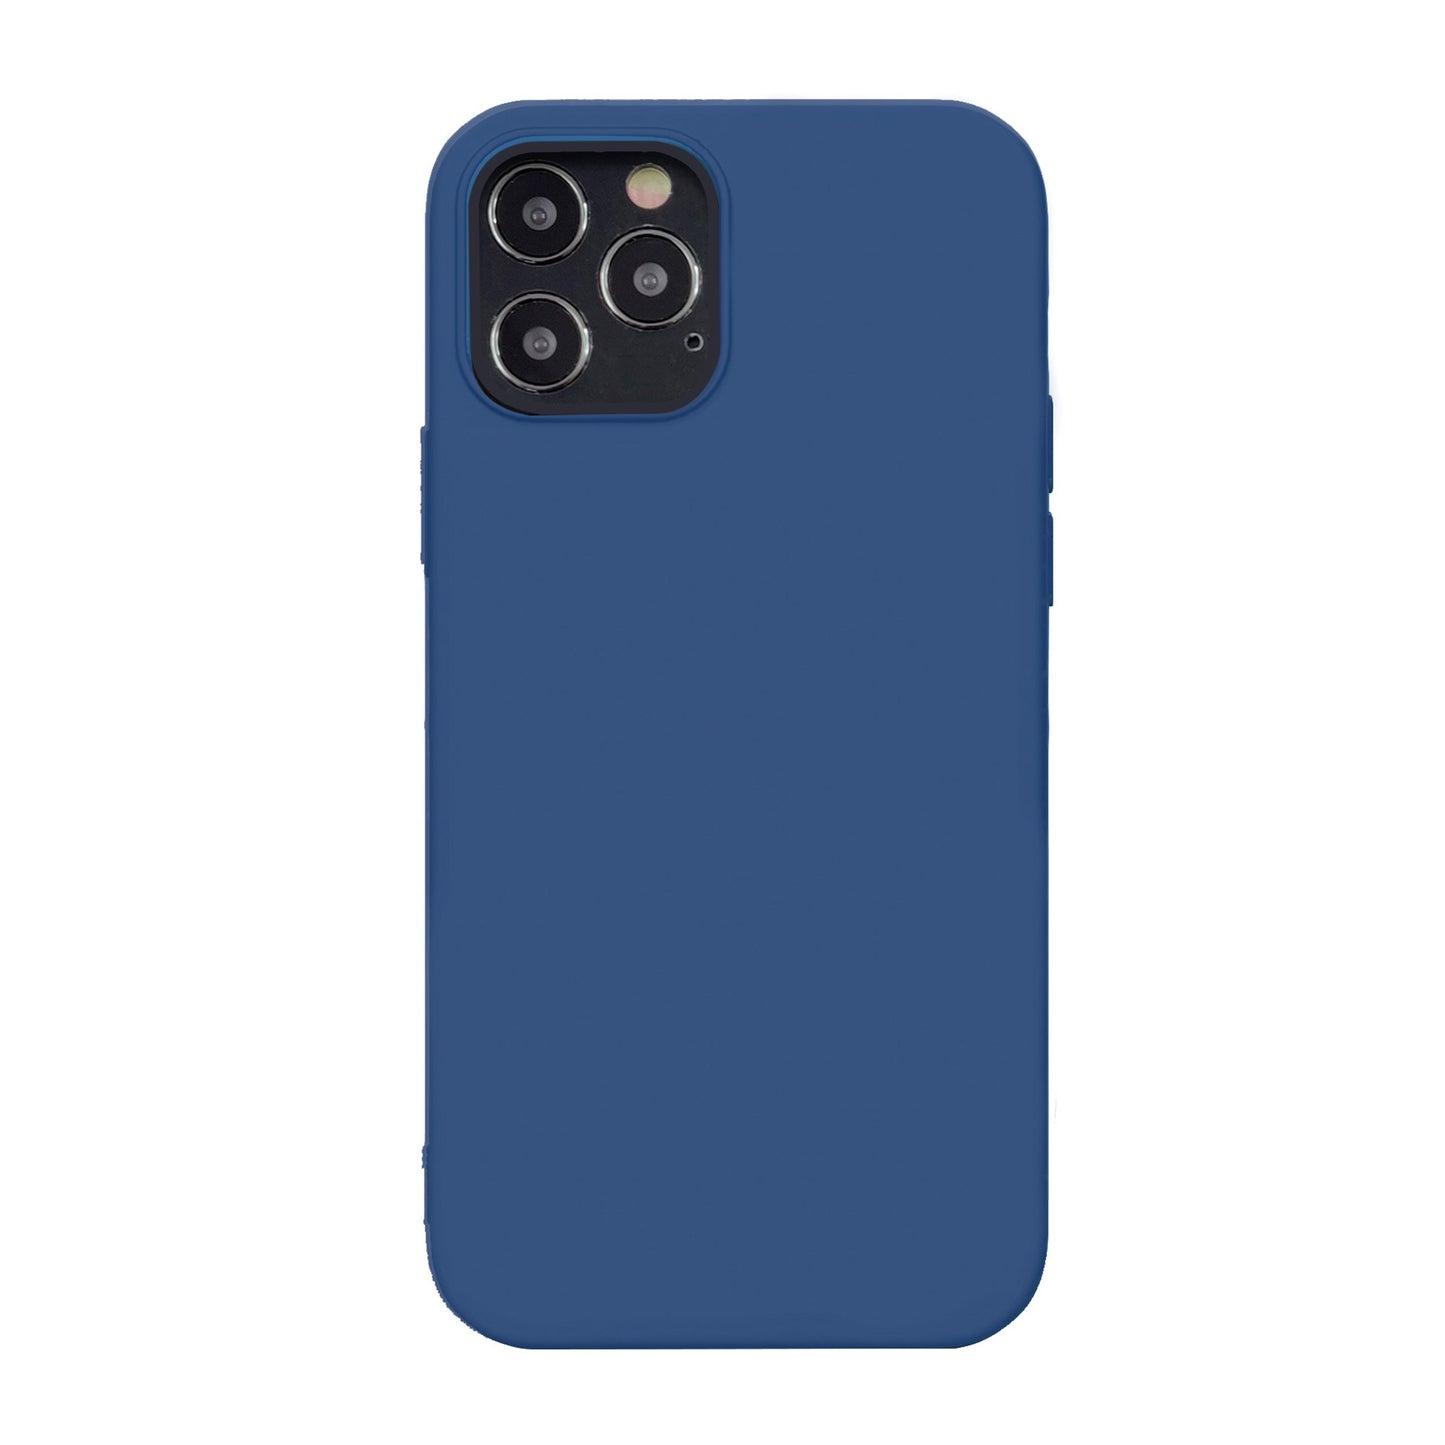 iPhone 12/12 Pro Uunique Blue Liquid Silicone Case - 15-07613